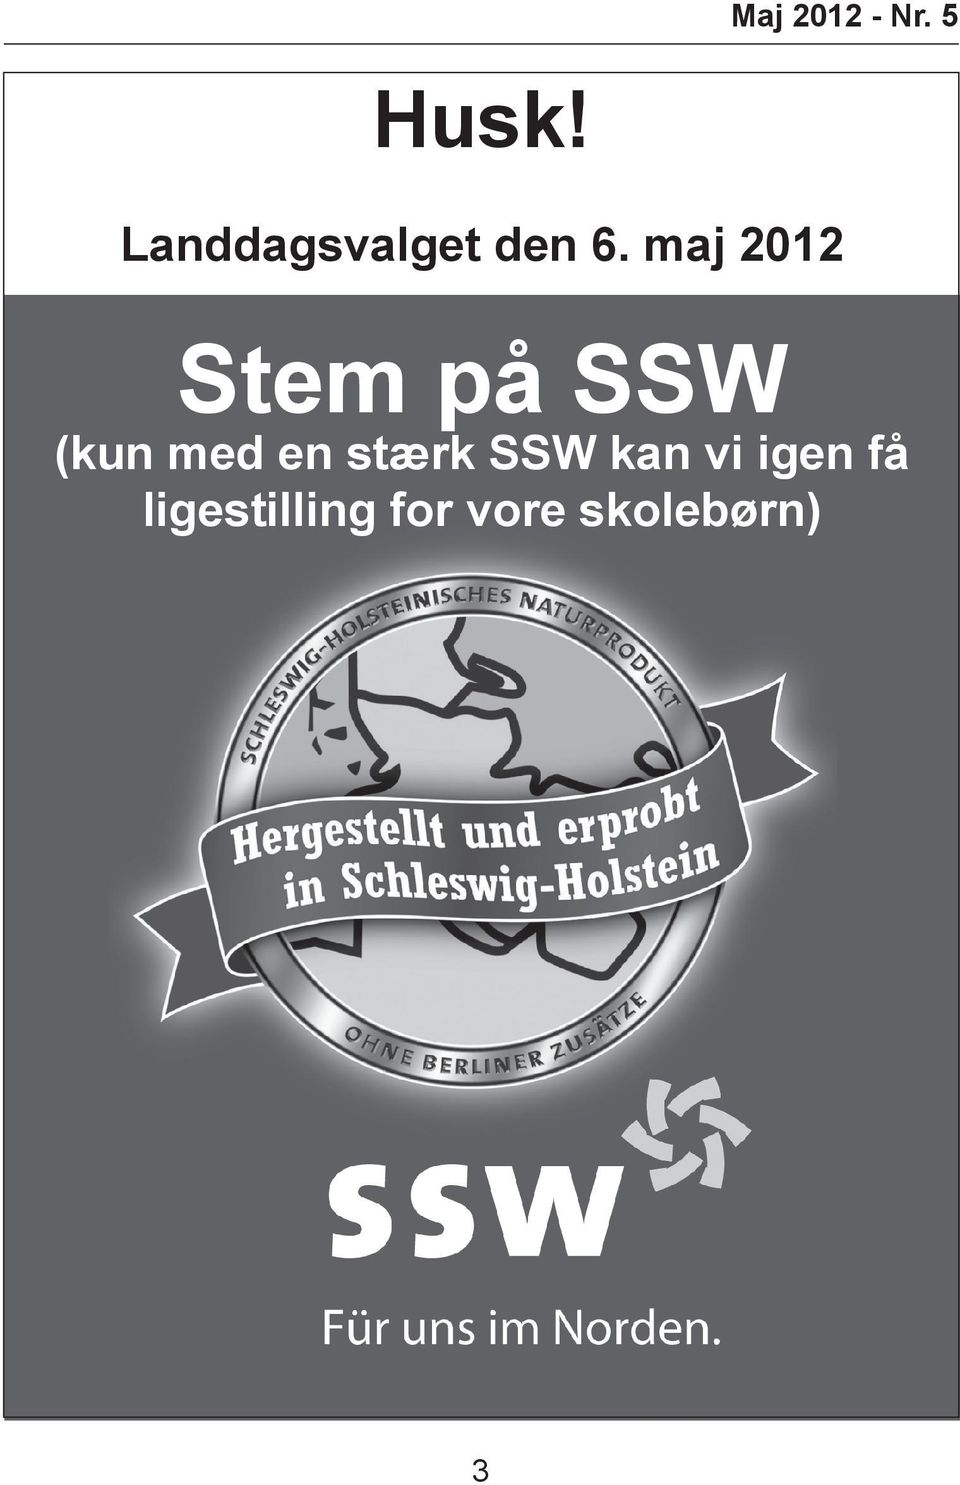 de Stem på SSW ReiseCenter (kun med en stærk SSW kan vi igen få i Citti-Park Flensborg ligestilling Book Jeres næste for rejse vore hos Flensborgs skolebørn) eneste uafhængige